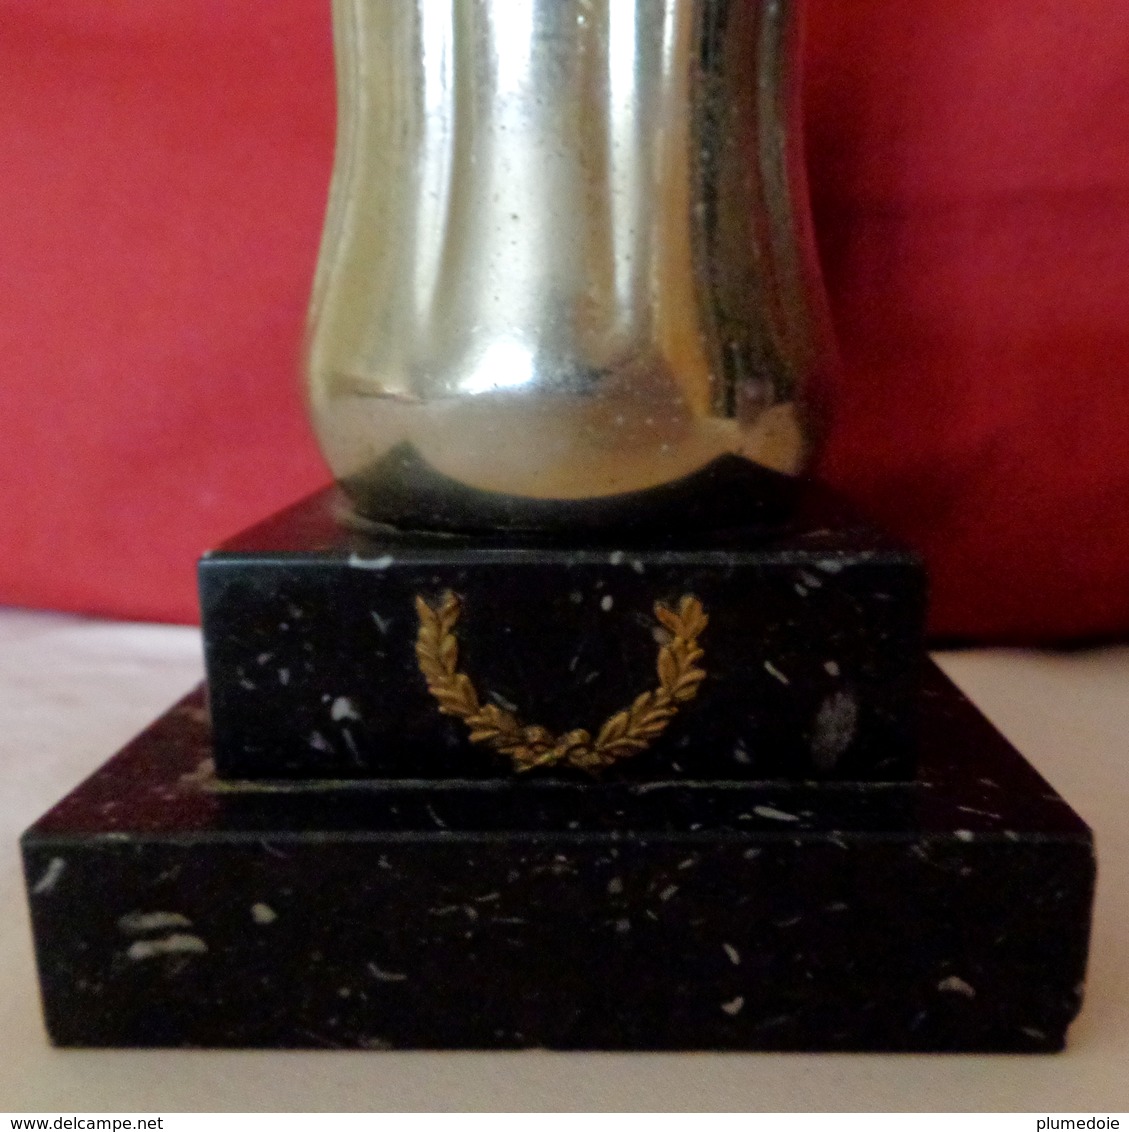 TROPHEE  COCA COLA   , Bouteille Taille Réelle  Métal Argenté  Socle Marbre Noir  OLD  BOTTLE SILVER METAL TROPHY 1960 ' - Flaschen